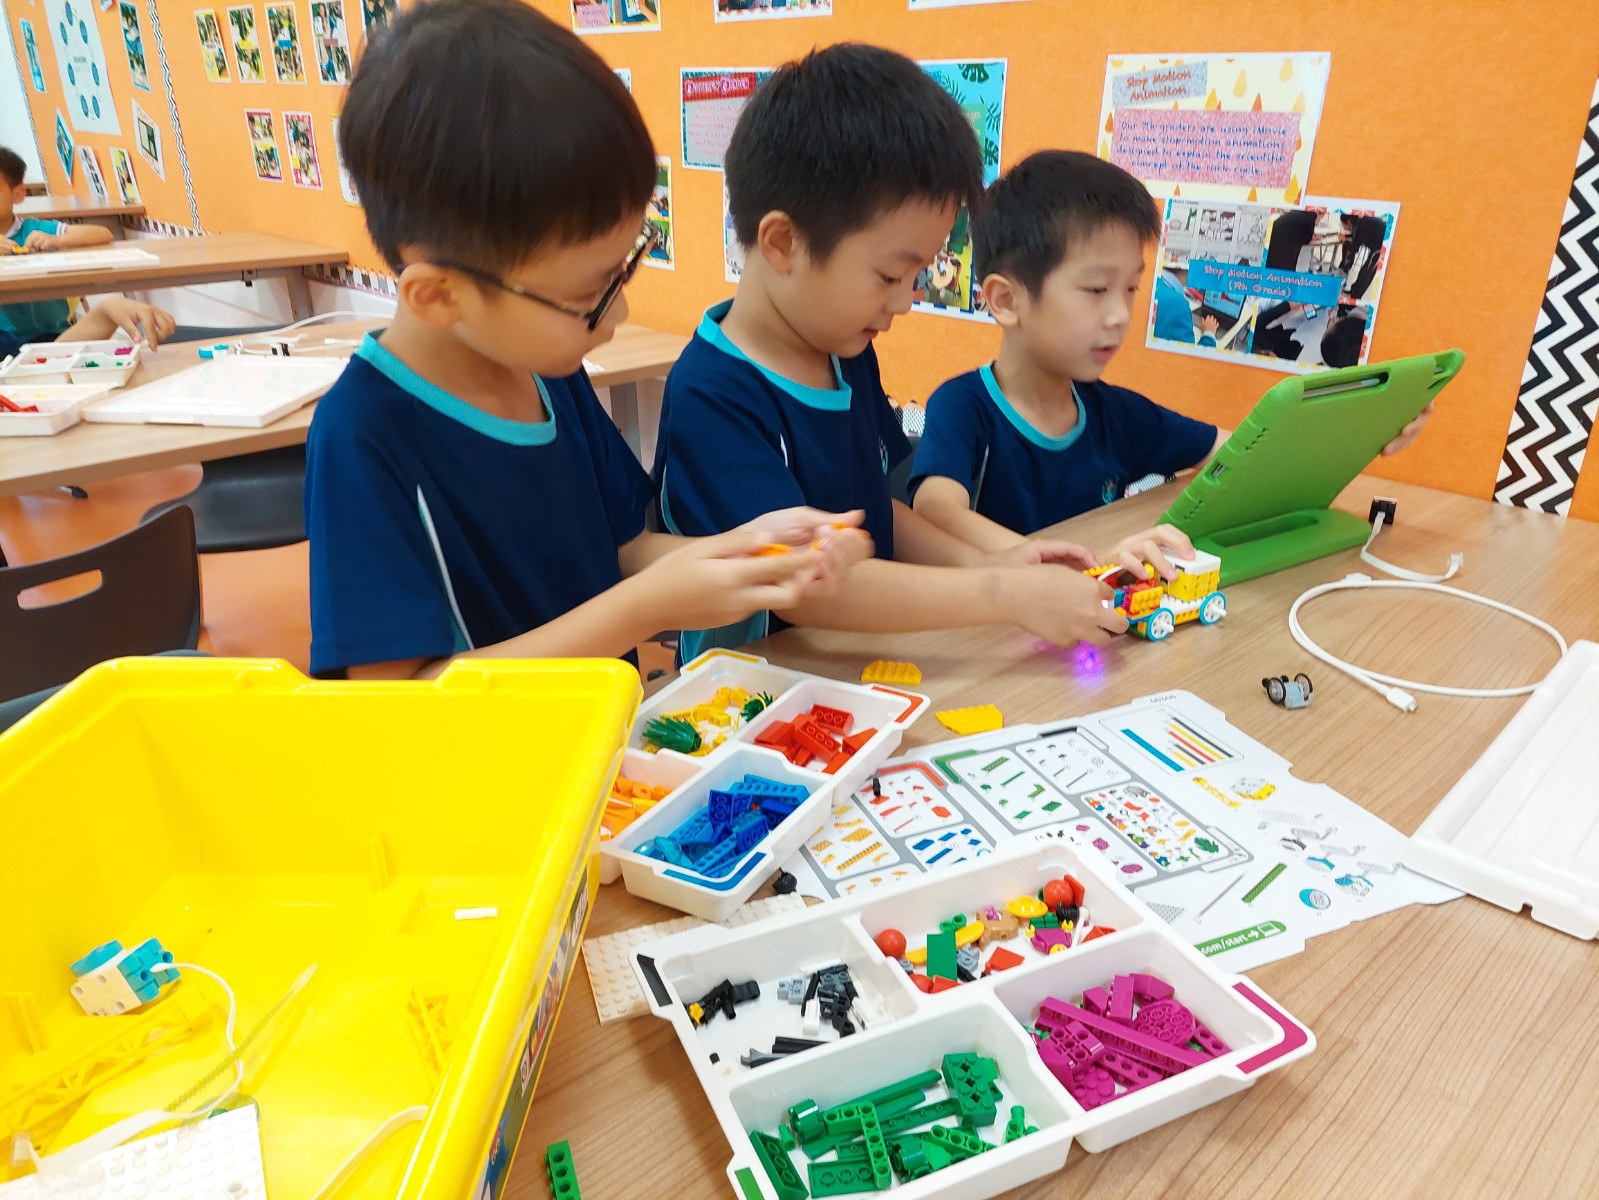 SPIKE Essential 學生培訓課程 - American School Hong Kong